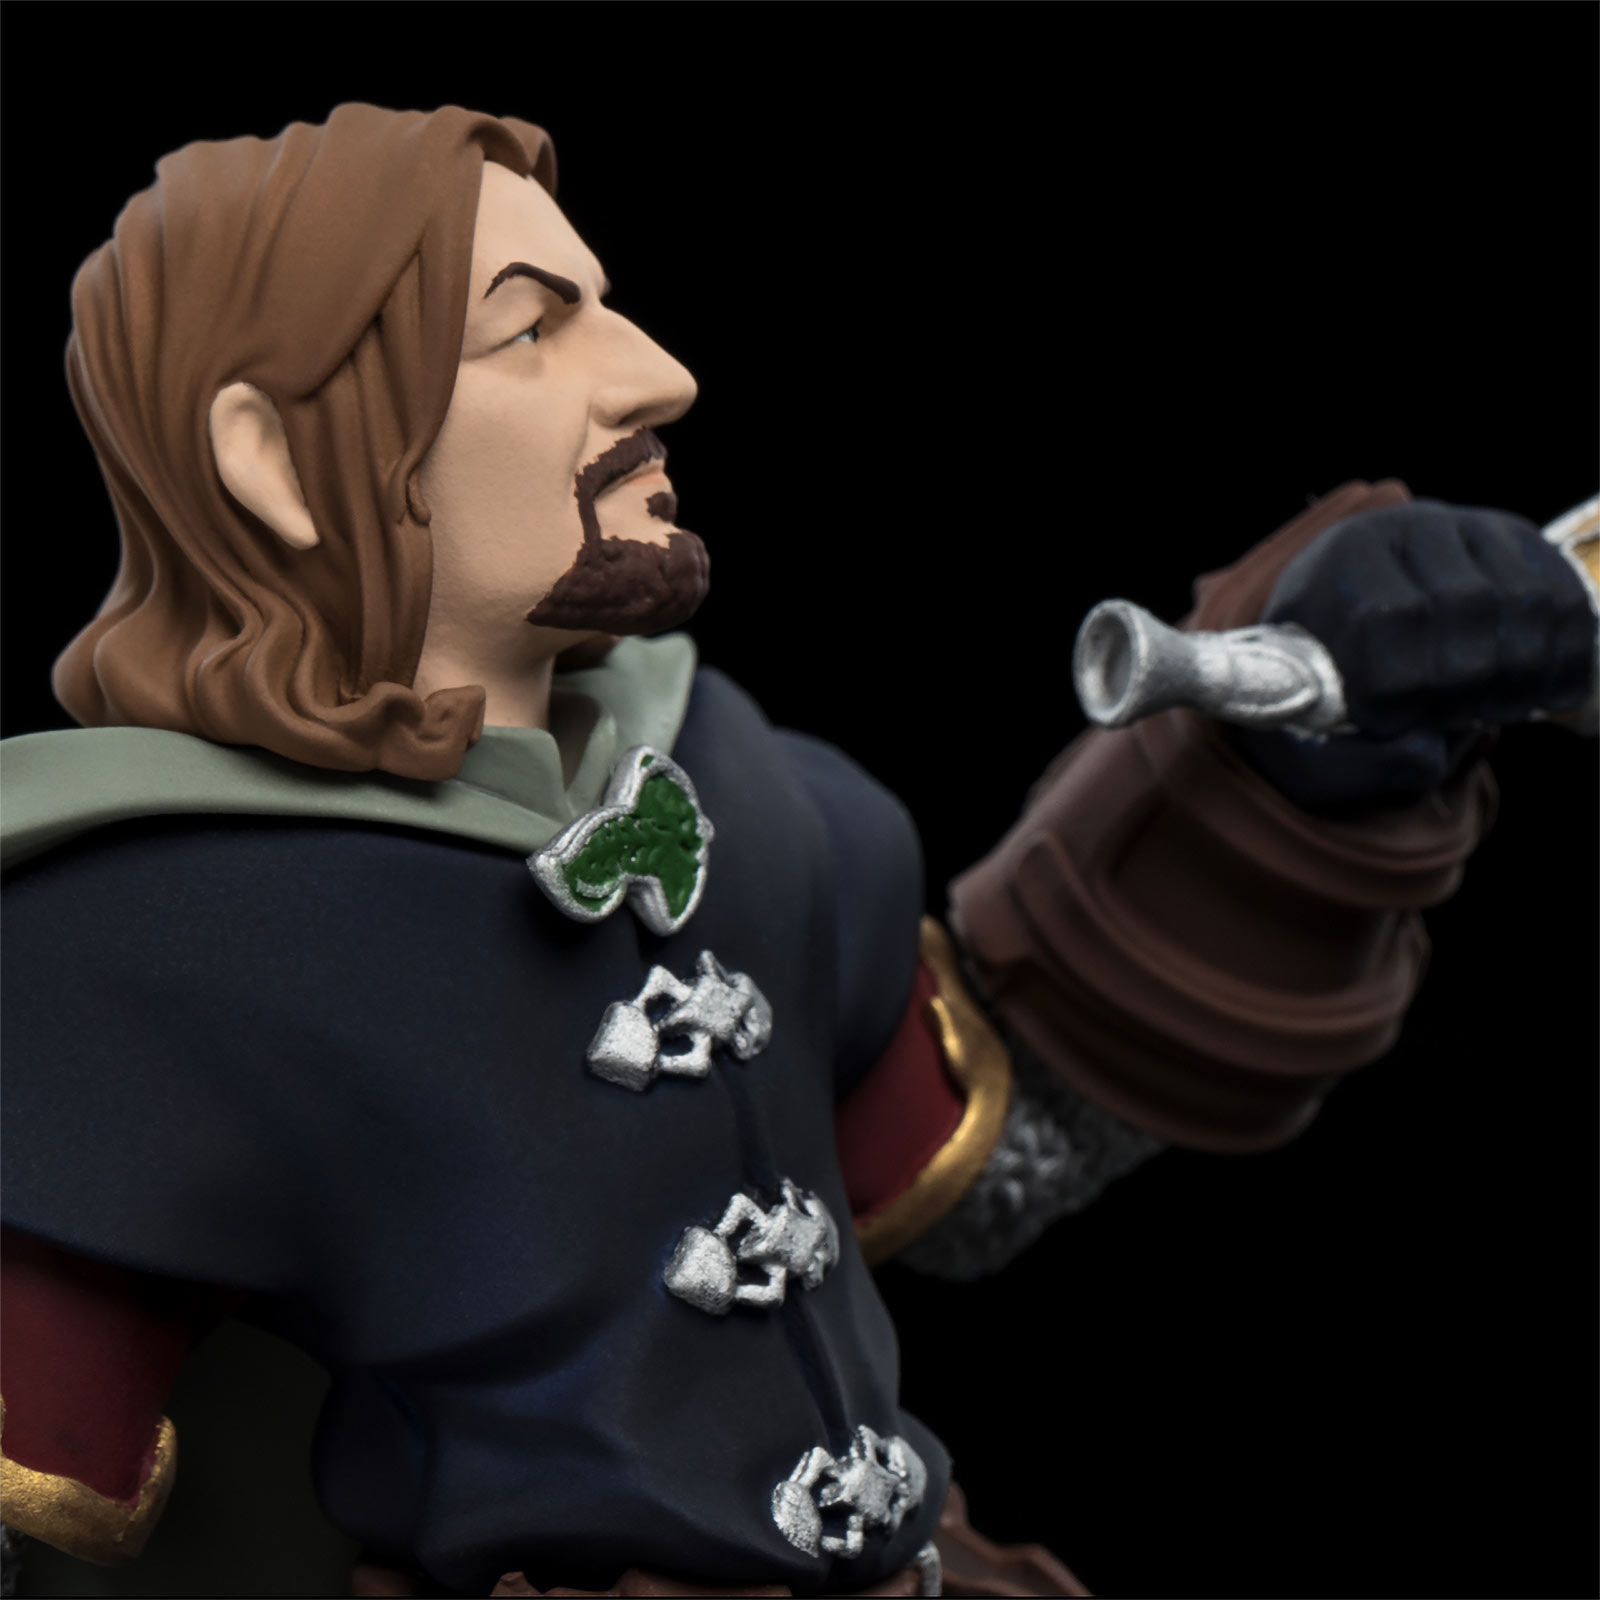 Herr der Ringe - Boromir Mini Epics Figur